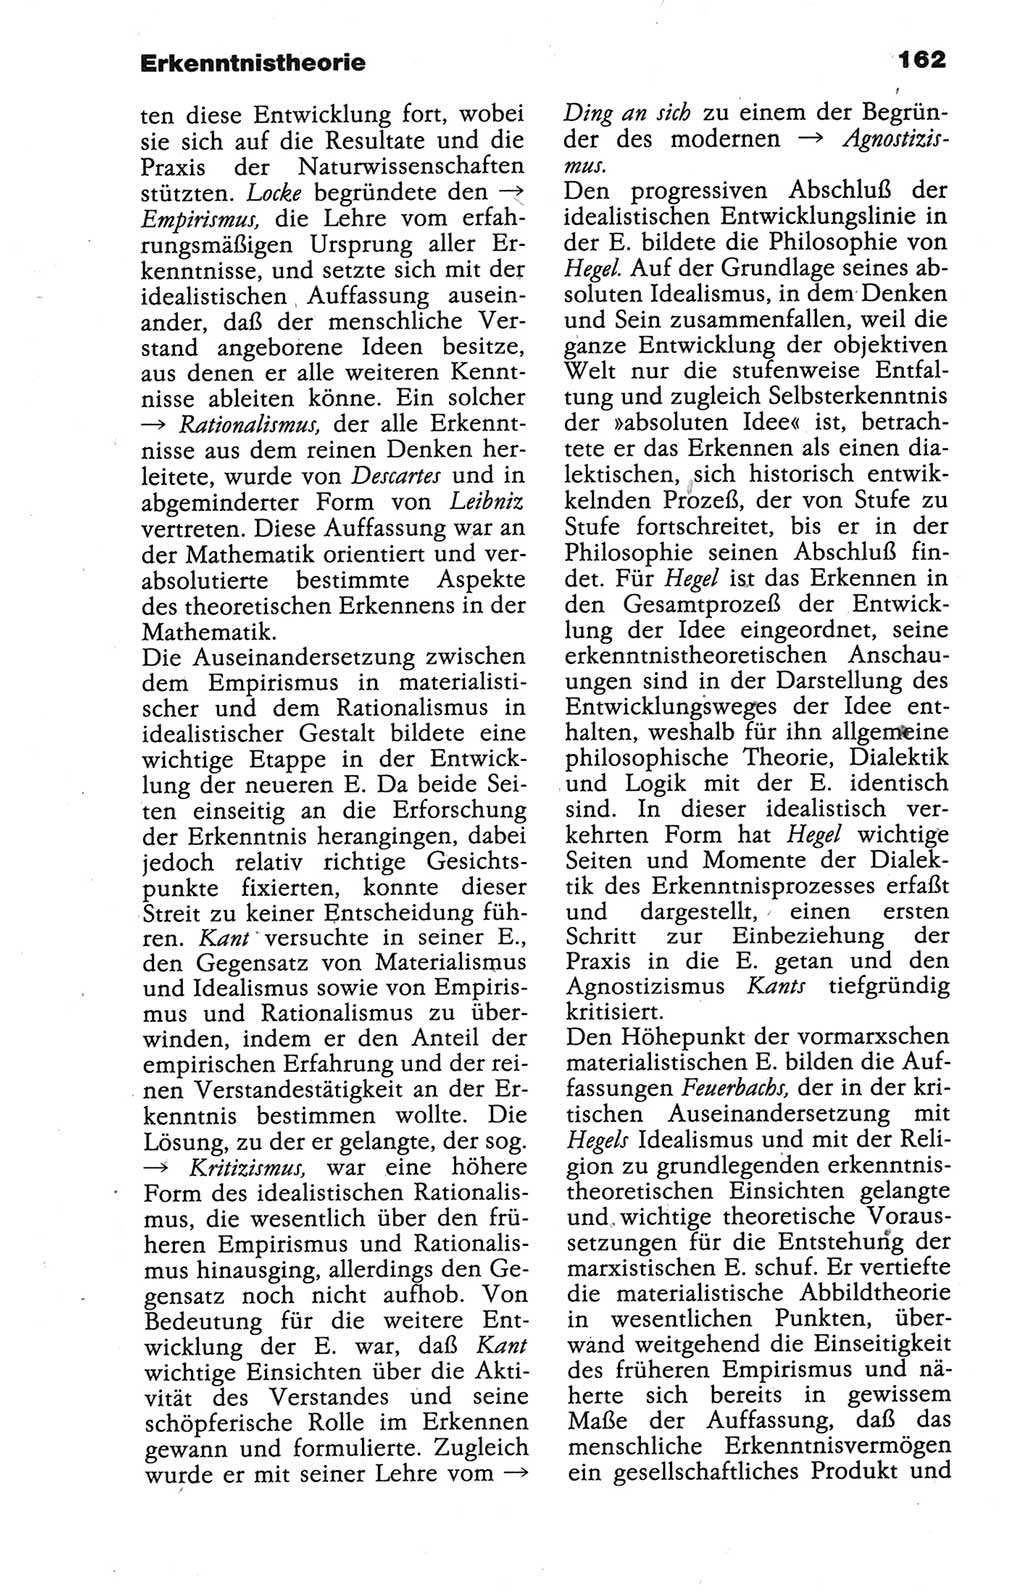 Wörterbuch der marxistisch-leninistischen Philosophie [Deutsche Demokratische Republik (DDR)] 1986, Seite 162 (Wb. ML Phil. DDR 1986, S. 162)